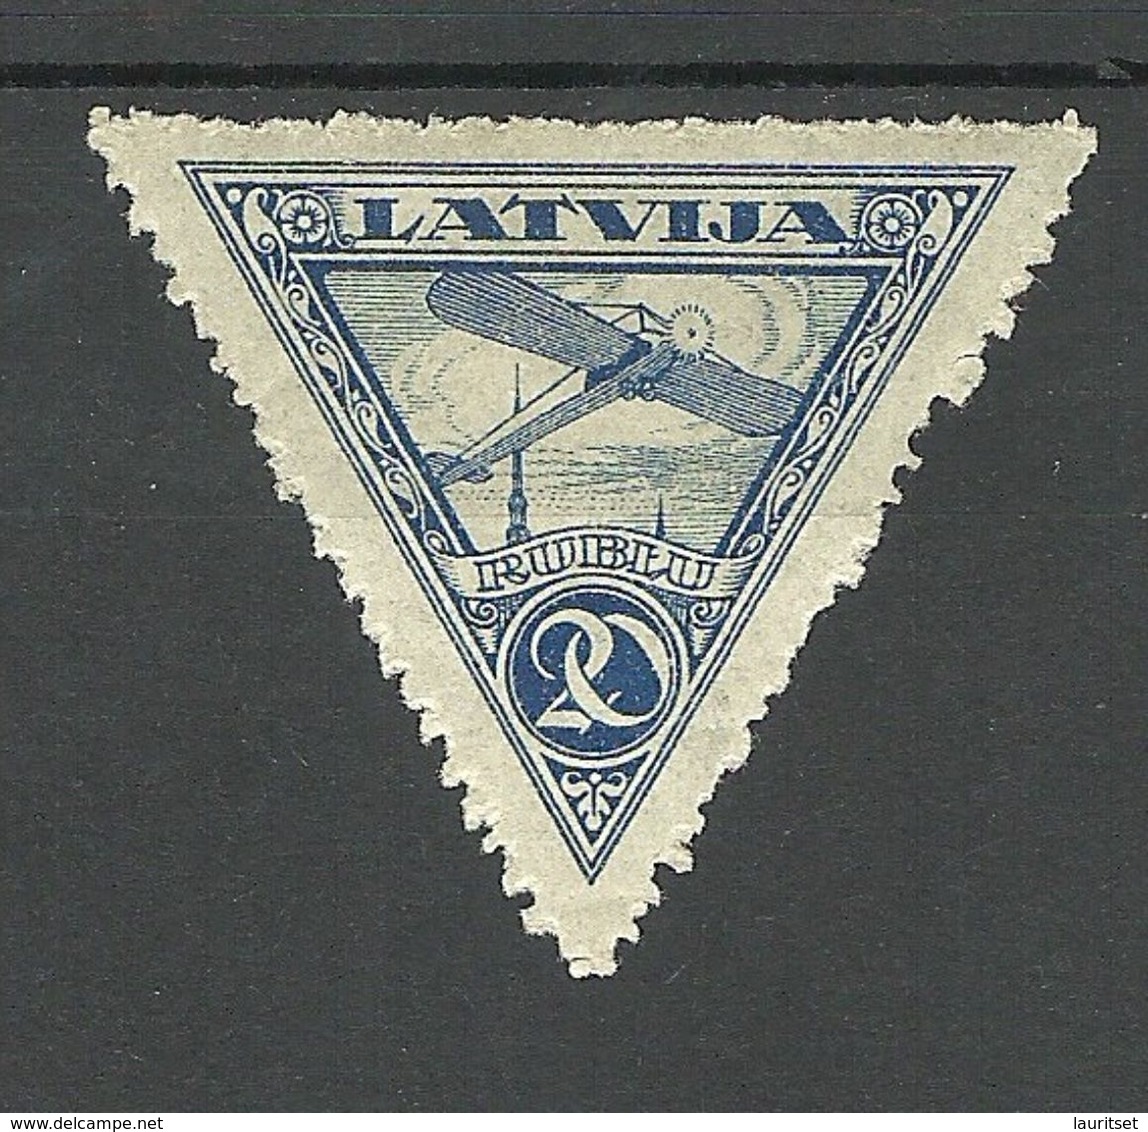 LETTLAND Latvia 1921 Michel 76 A * - Latvia